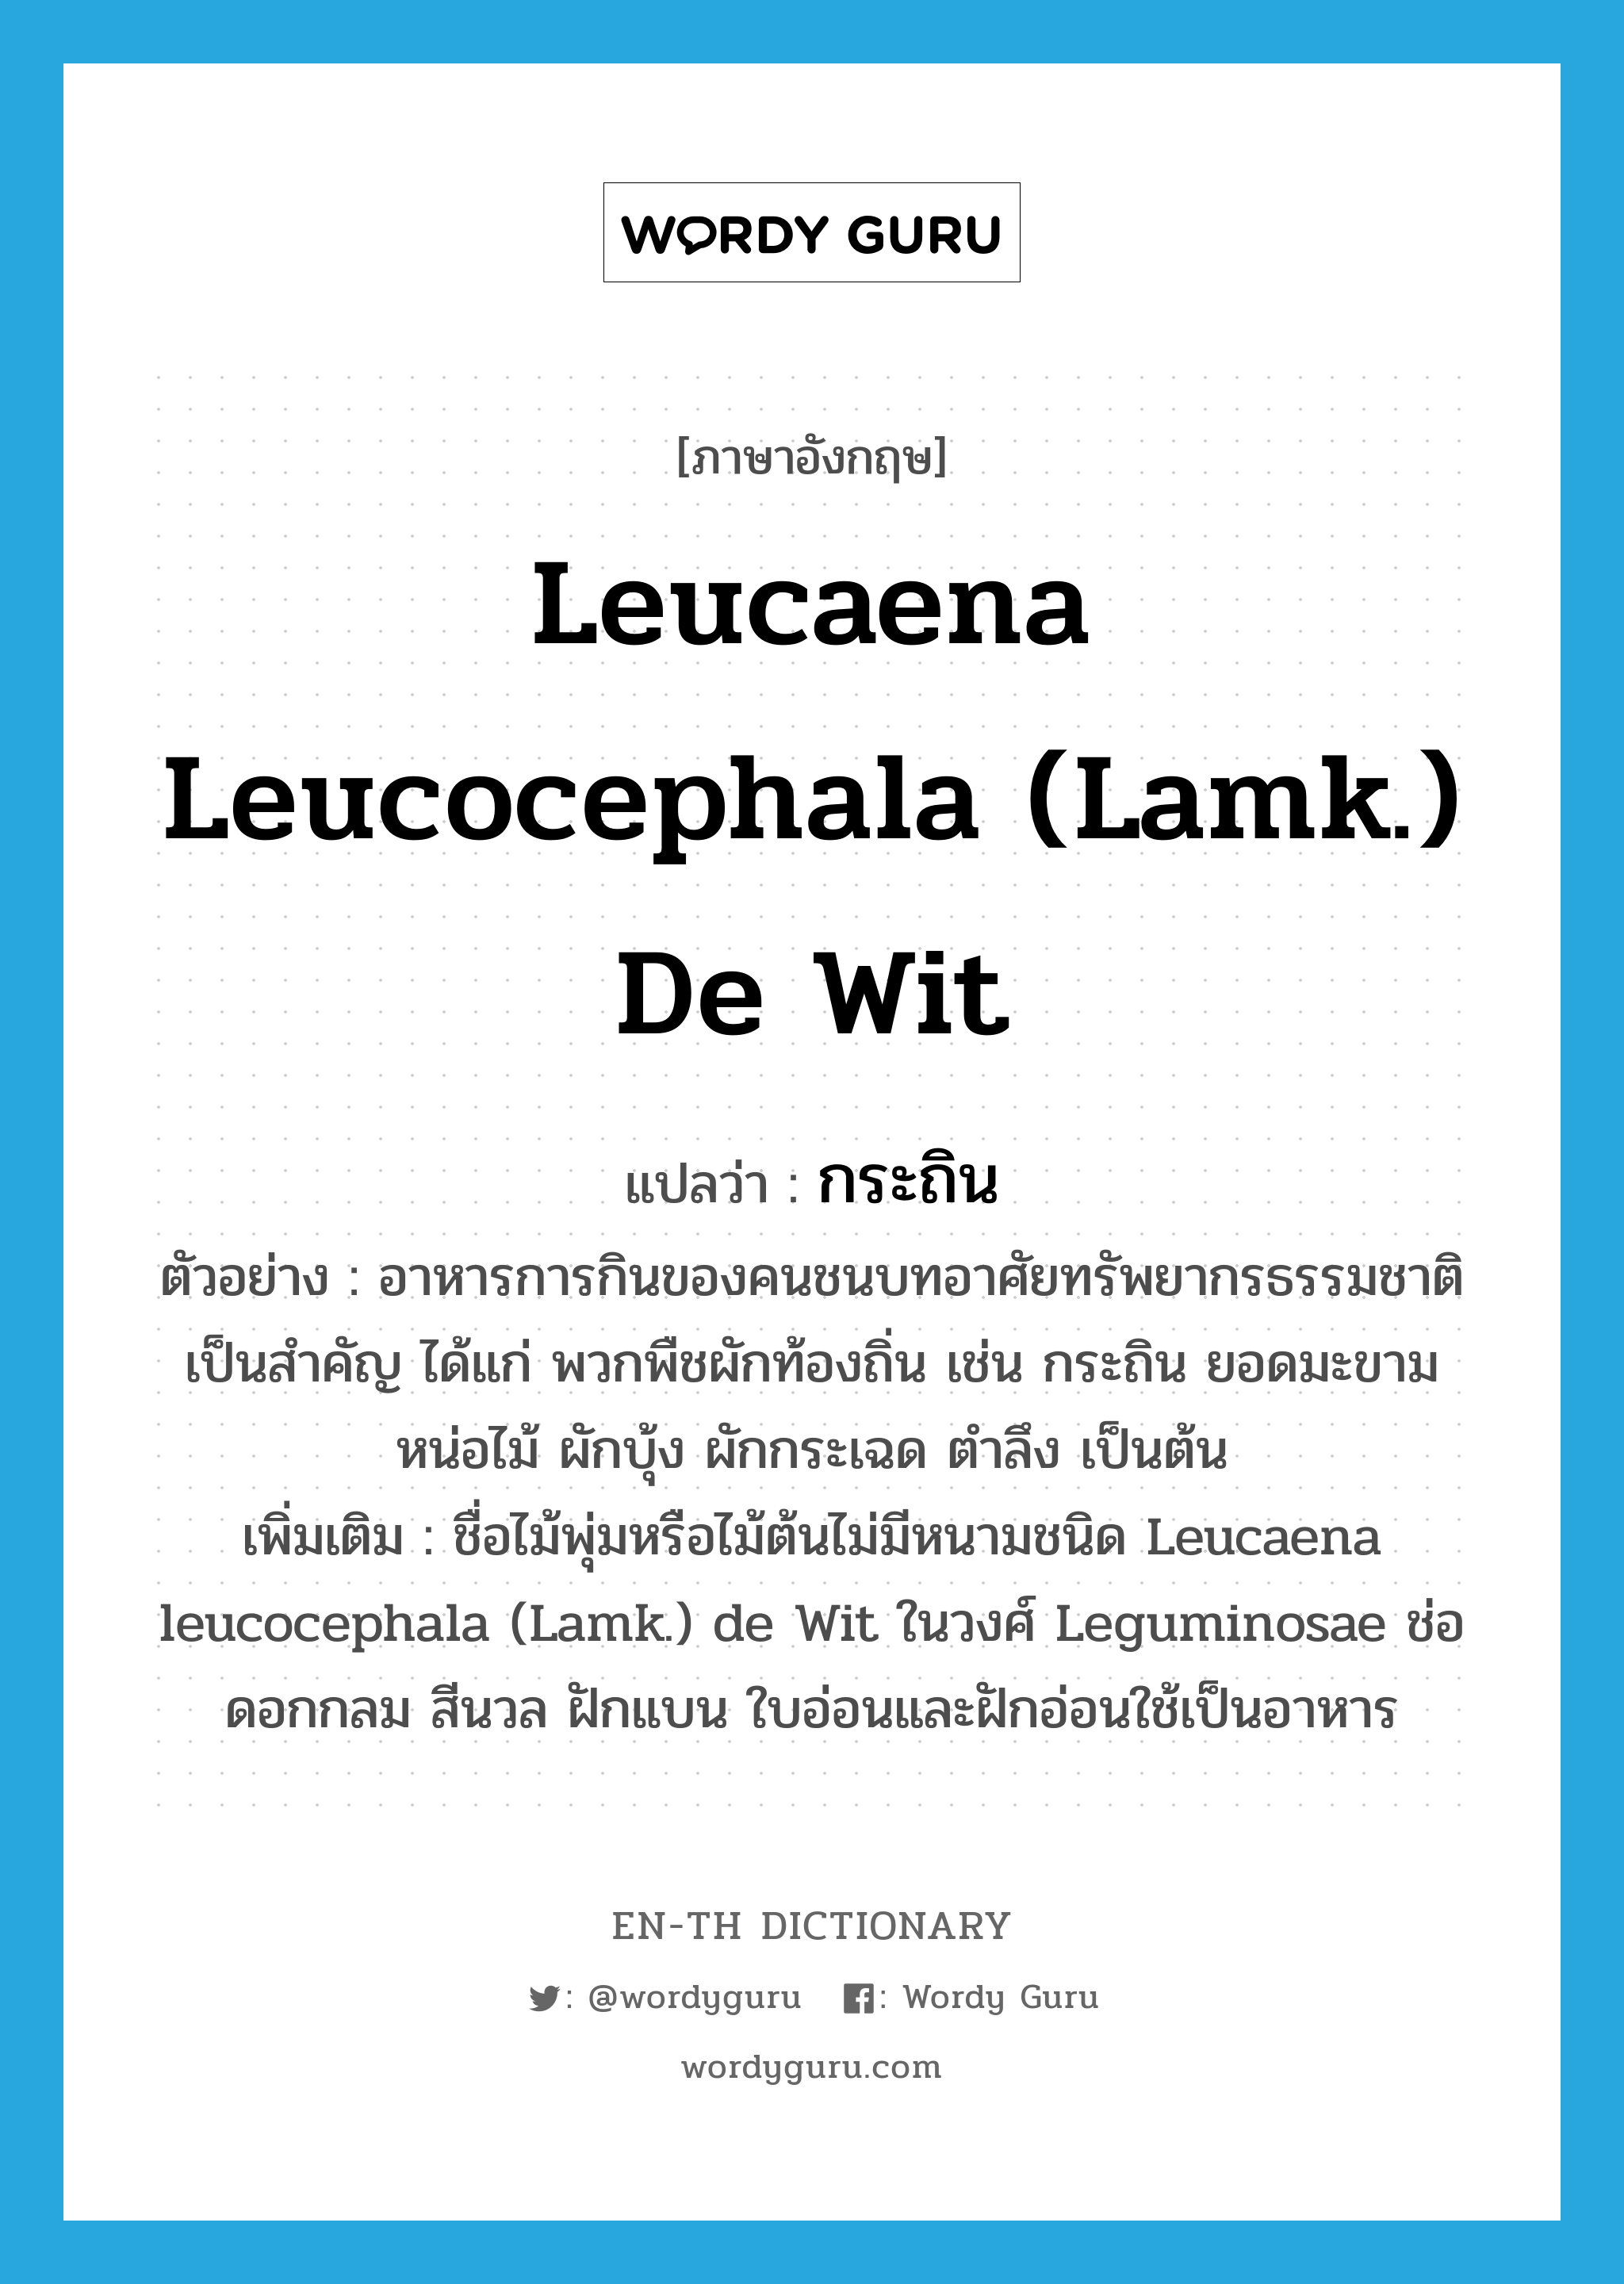 Leucaena leucocephala (Lamk.) de Wit แปลว่า?, คำศัพท์ภาษาอังกฤษ Leucaena leucocephala (Lamk.) de Wit แปลว่า กระถิน ประเภท N ตัวอย่าง อาหารการกินของคนชนบทอาศัยทรัพยากรธรรมชาติเป็นสำคัญ ได้แก่ พวกพืชผักท้องถิ่น เช่น กระถิน ยอดมะขาม หน่อไม้ ผักบุ้ง ผักกระเฉด ตำลึง เป็นต้น เพิ่มเติม ชื่อไม้พุ่มหรือไม้ต้นไม่มีหนามชนิด Leucaena leucocephala (Lamk.) de Wit ในวงศ์ Leguminosae ช่อดอกกลม สีนวล ฝักแบน ใบอ่อนและฝักอ่อนใช้เป็นอาหาร หมวด N